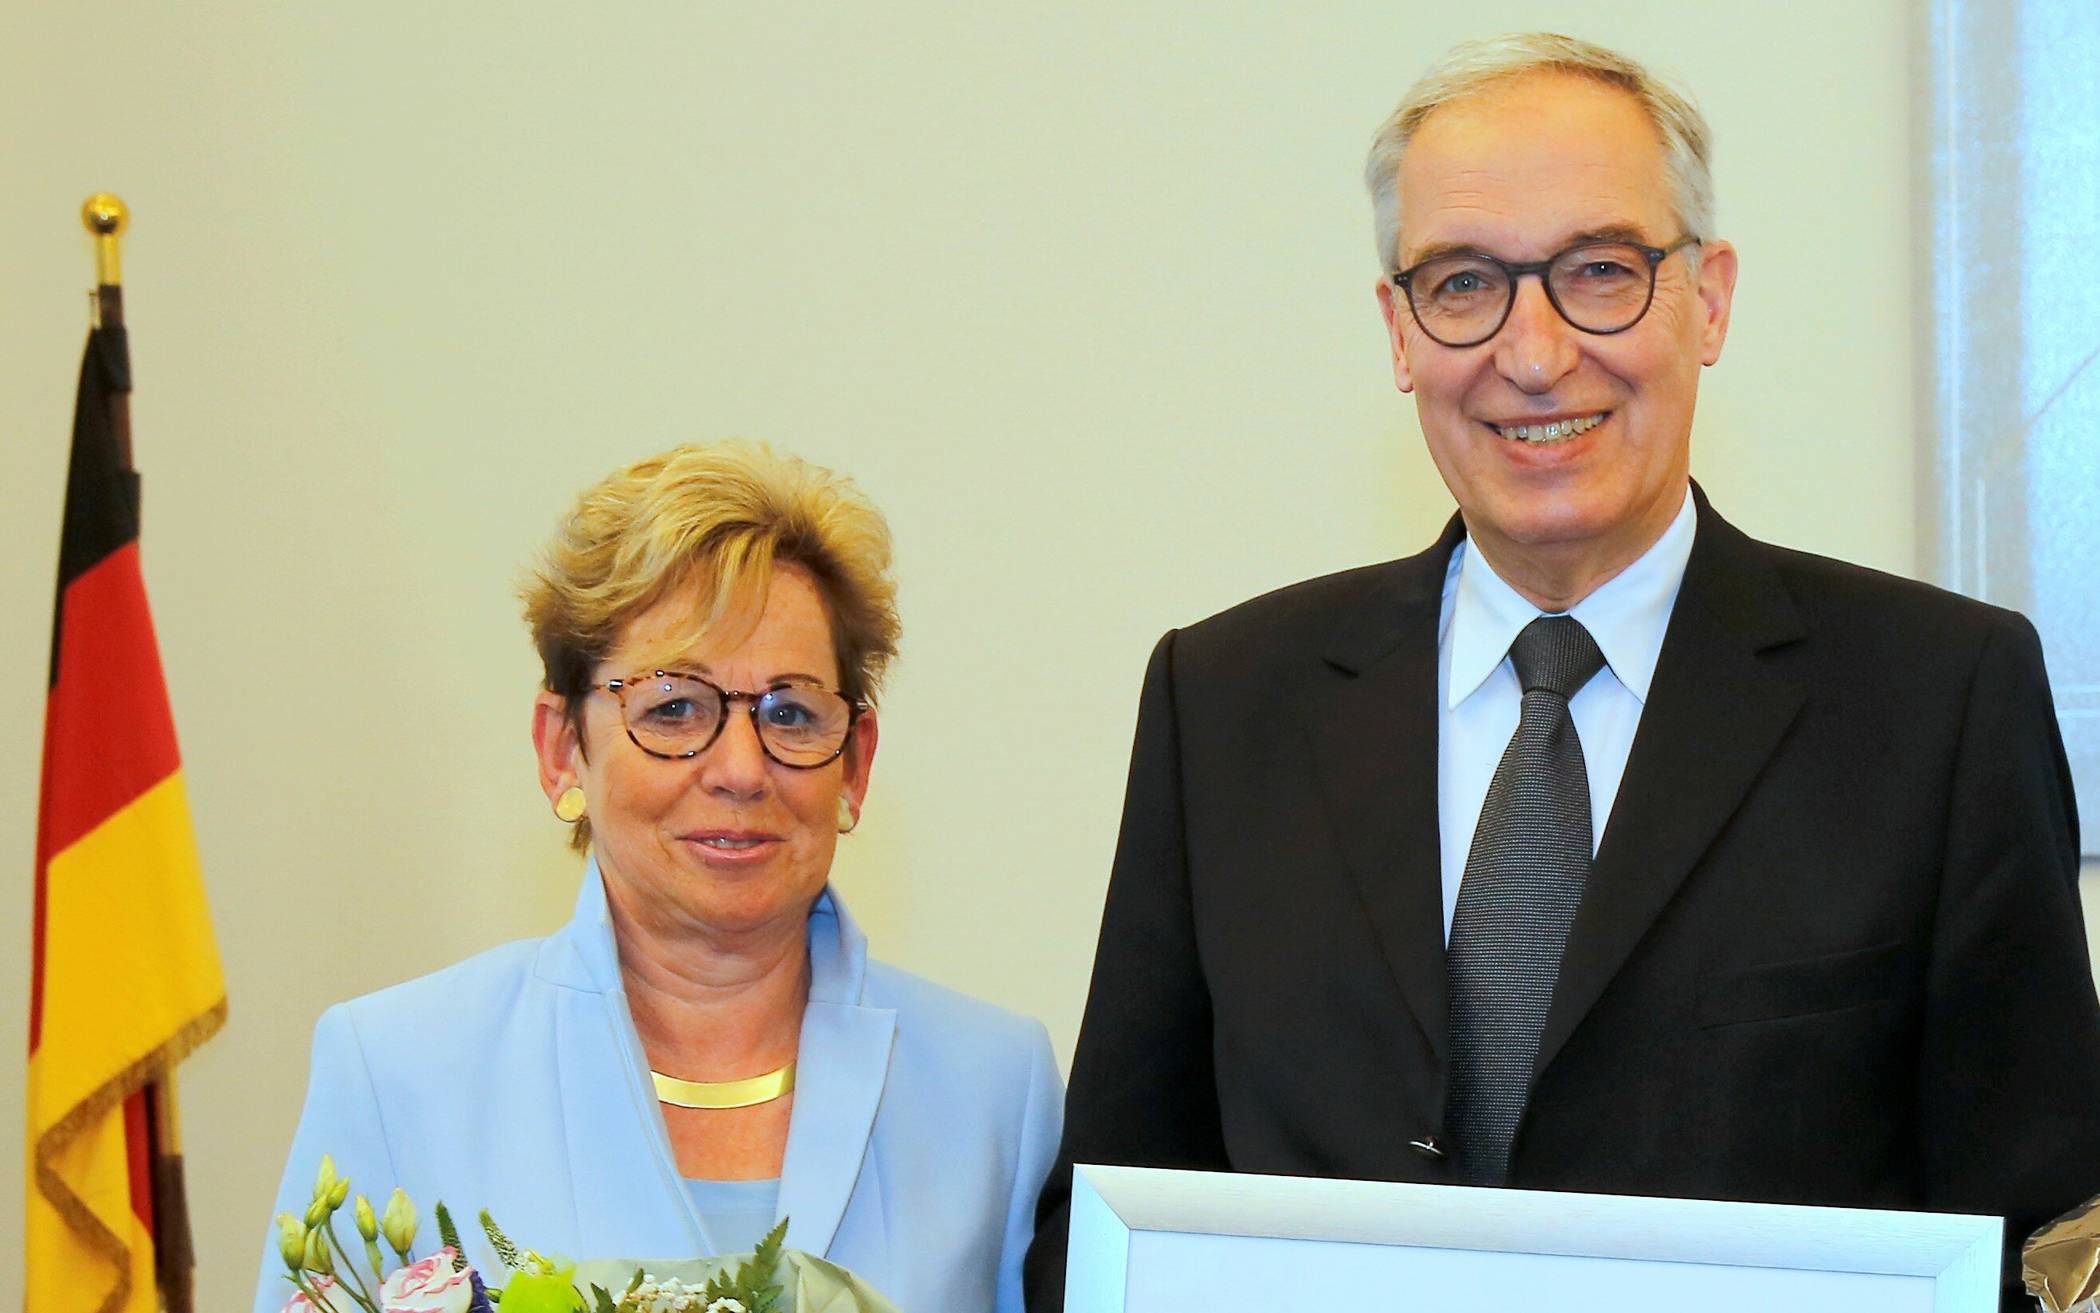  Kreiskämmerer Ingolf Graul wurde gemeinsam mit seiner Frau von Landrat Hans-Jürgen Petrauschke in den Ruhestand verabschiedet.  